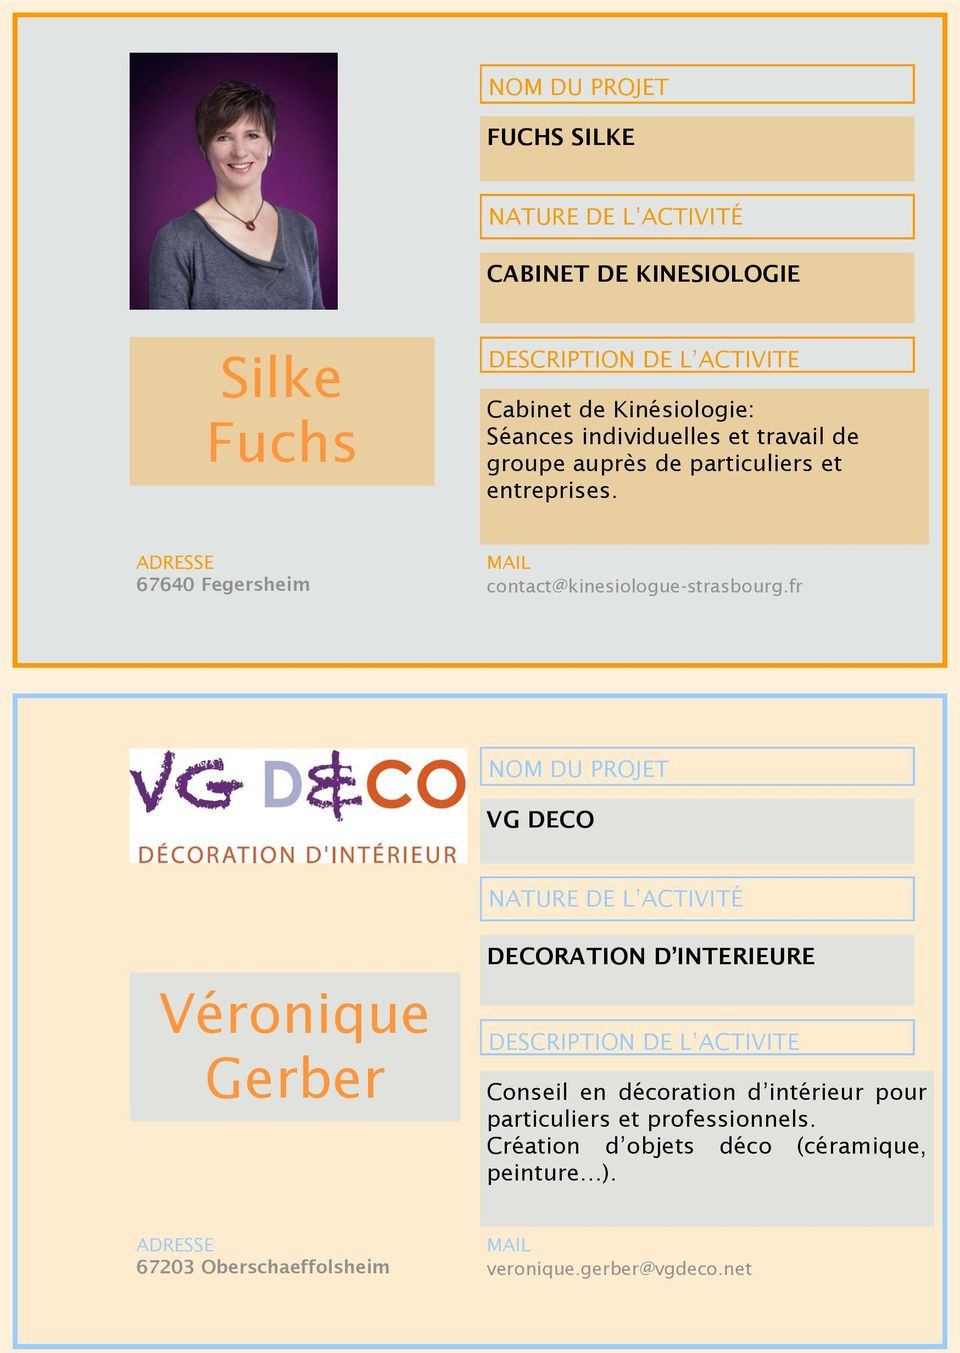 fr VG DECO Véronique Gerber DECORATION D INTERIEURE Conseil en décoration d intérieur pour particuliers et